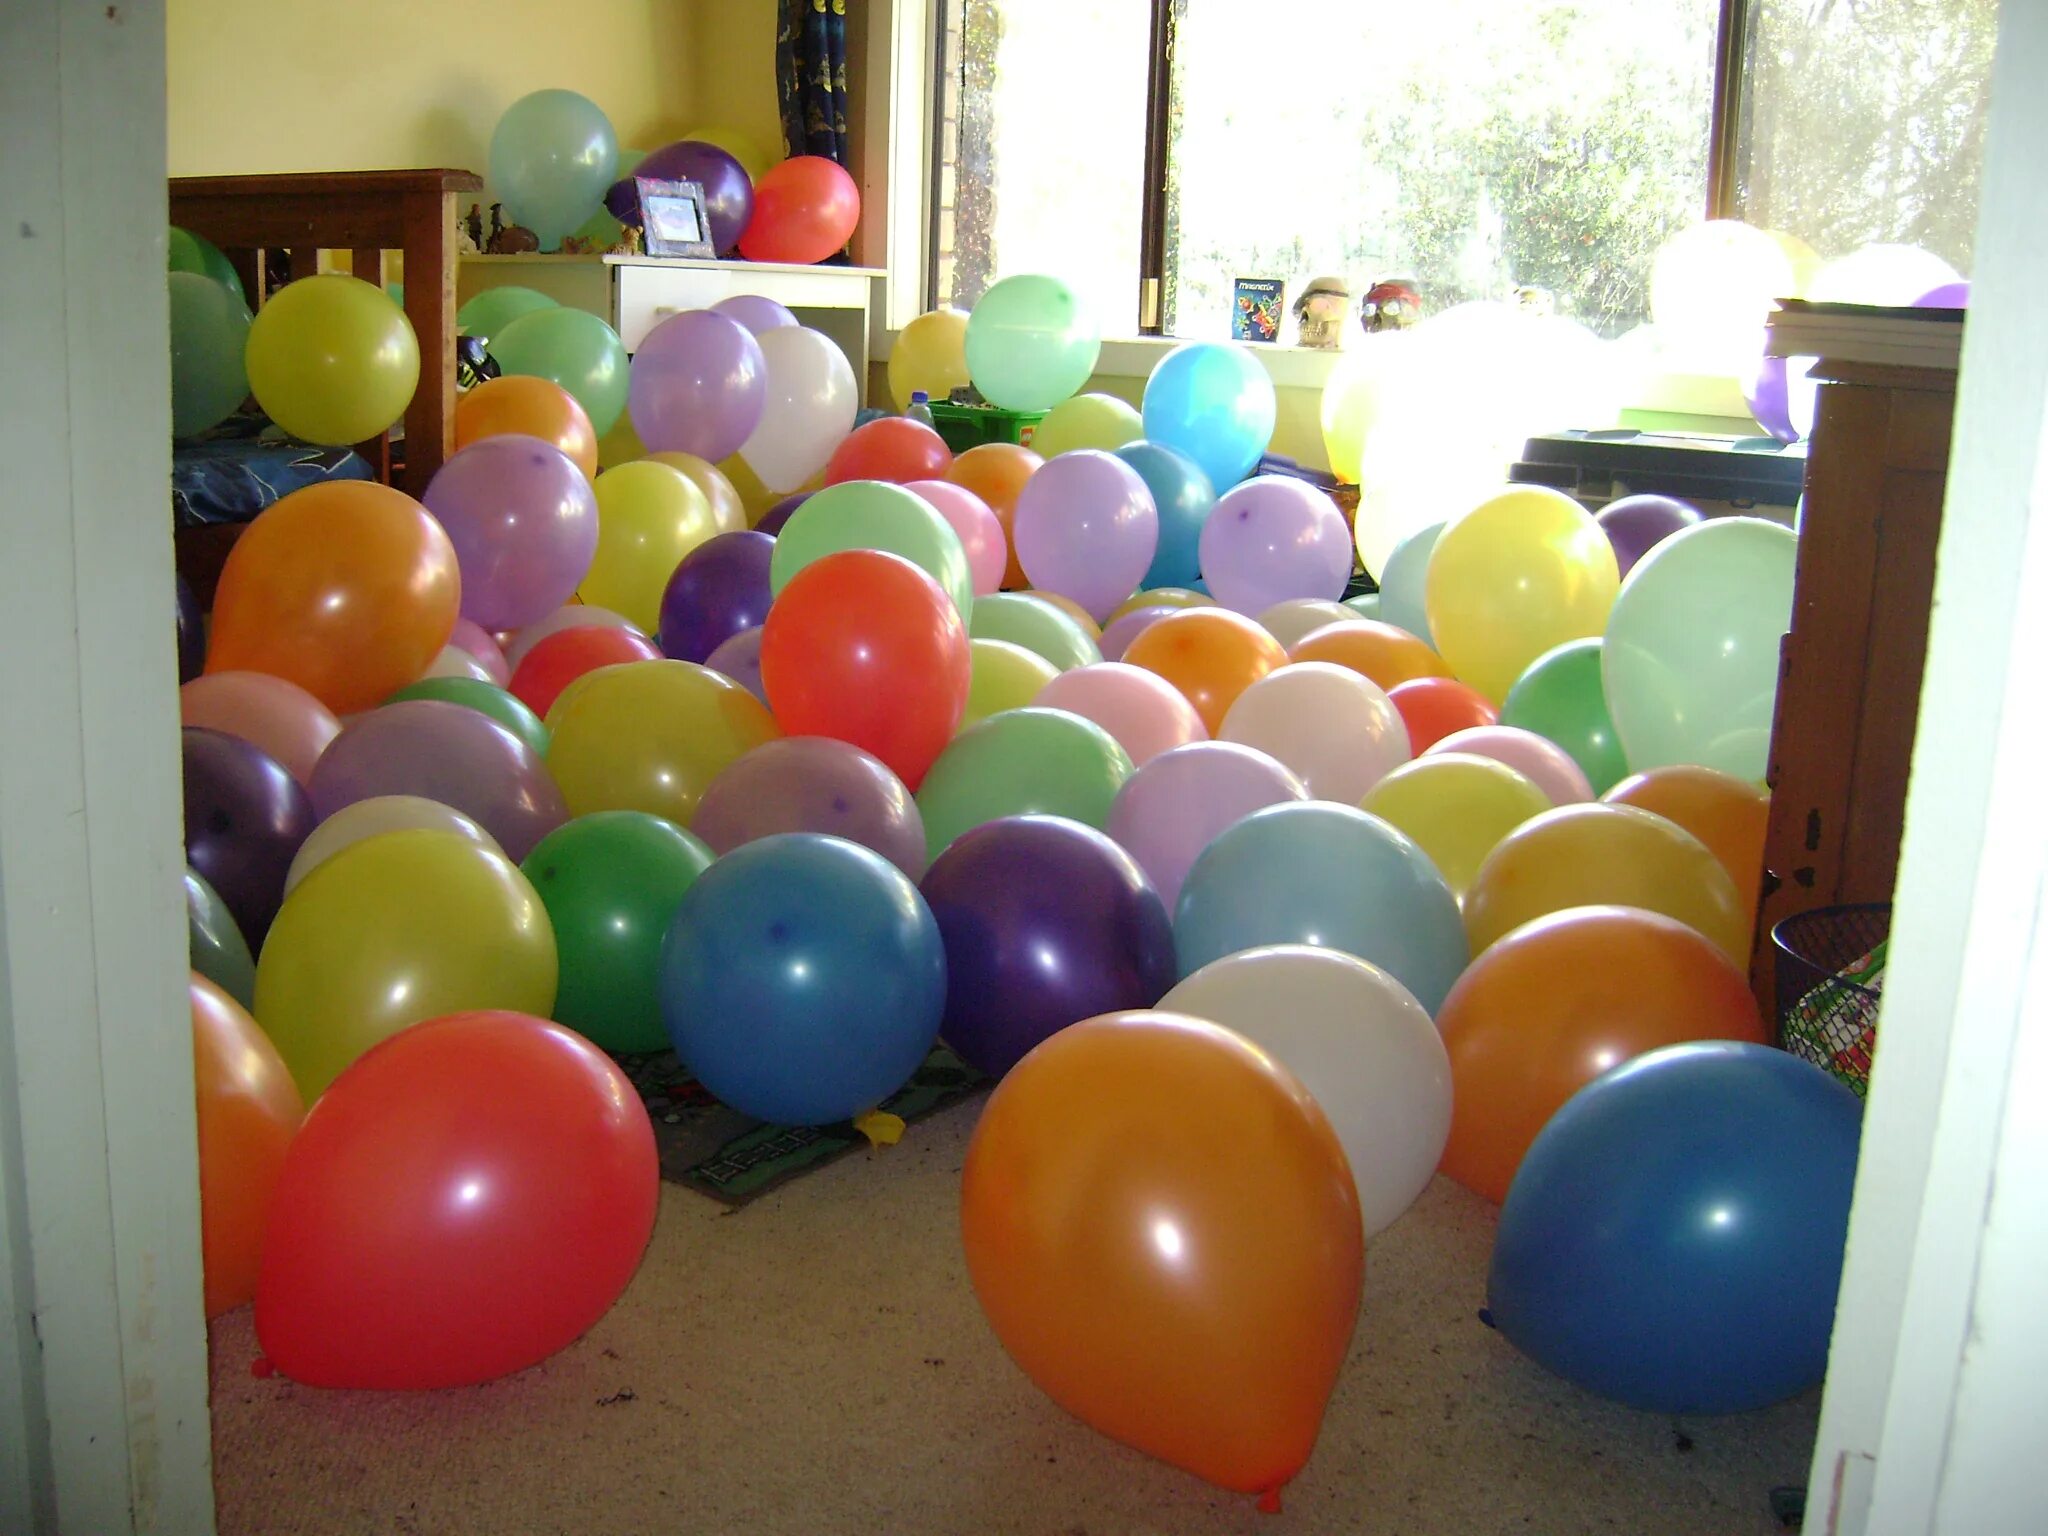 Купить дом шарами. Шары надувные. Воздушные шары на полу. Комната в шарах. Украшение обычными шарами.